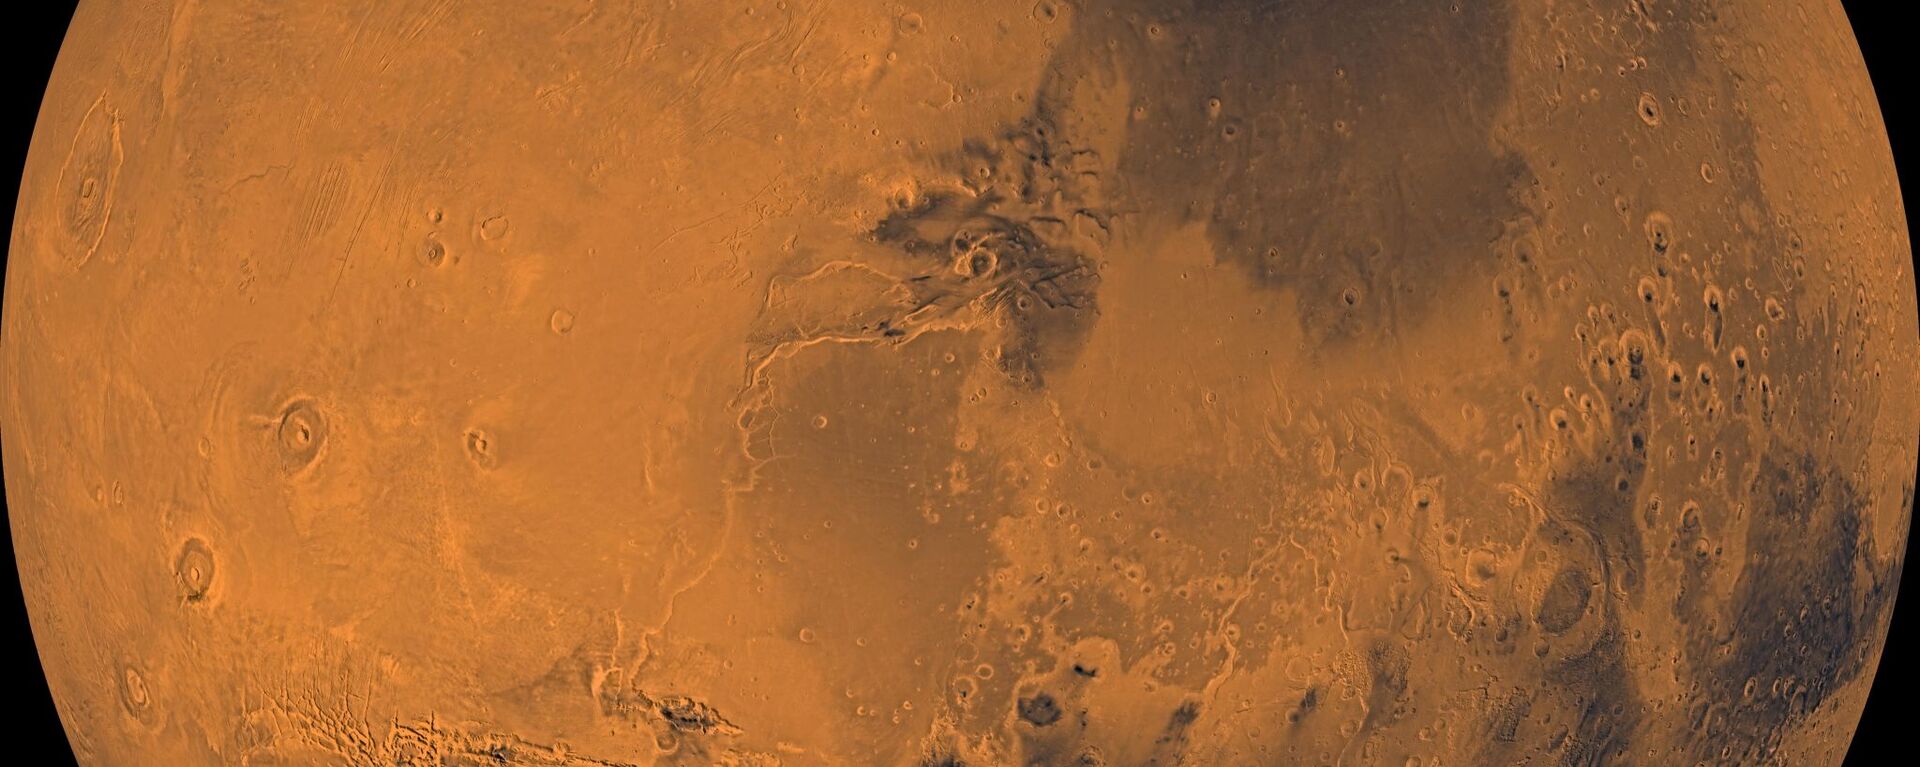 ناسا اسامی خواستاران را به مریخ می فرستد - اسپوتنیک ایران  , 1920, 23.11.2021